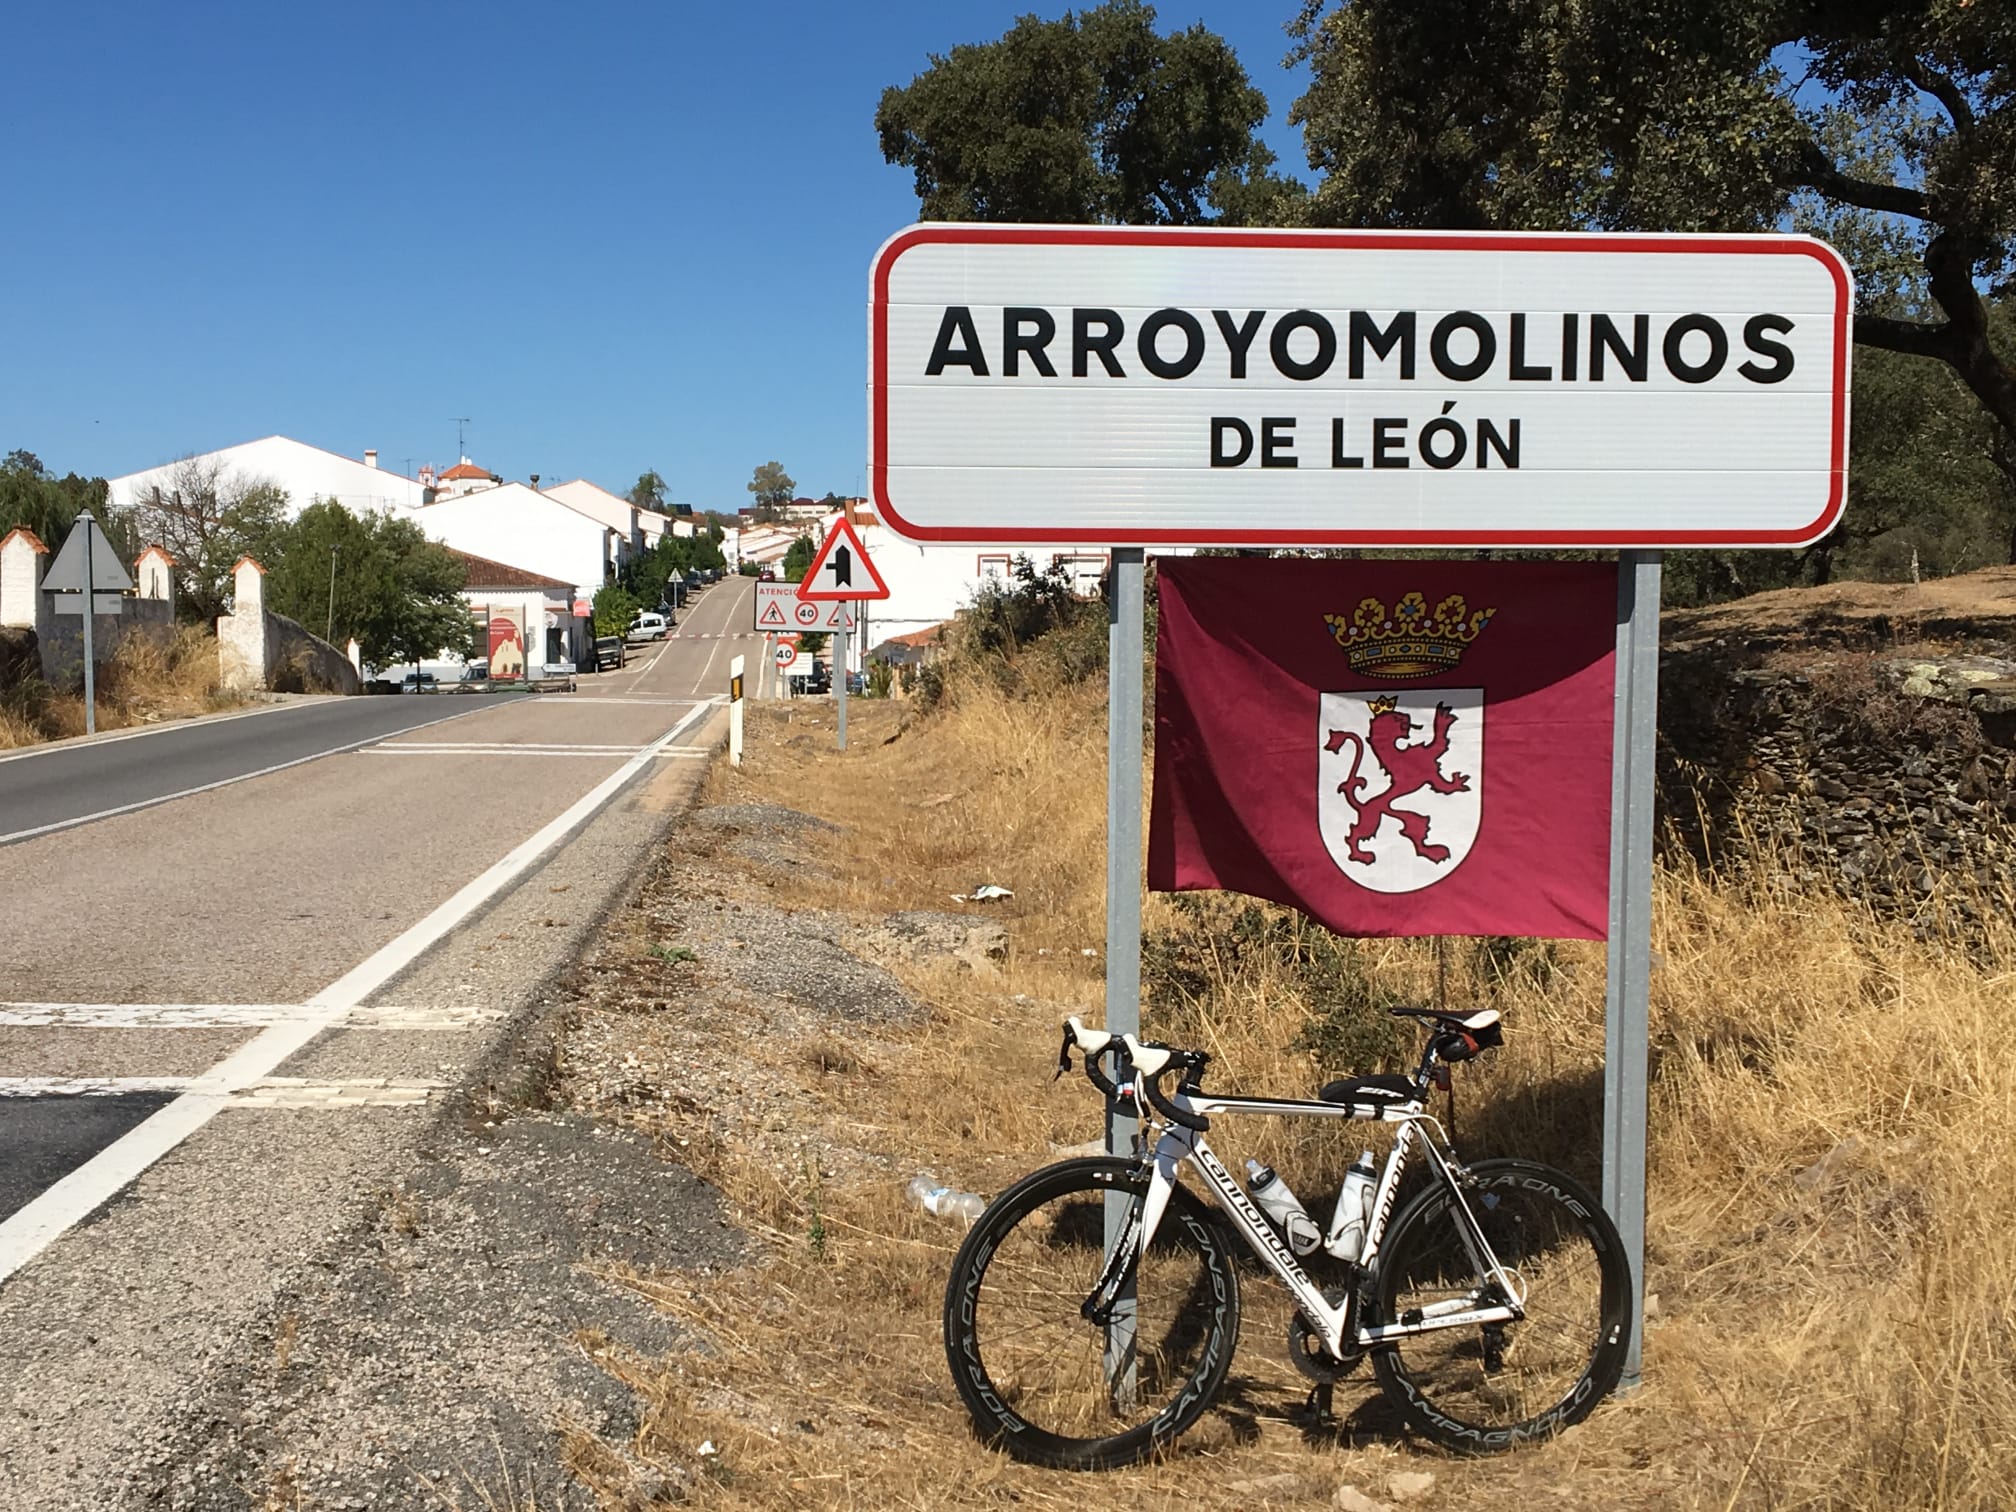 Arroyomolinos de León